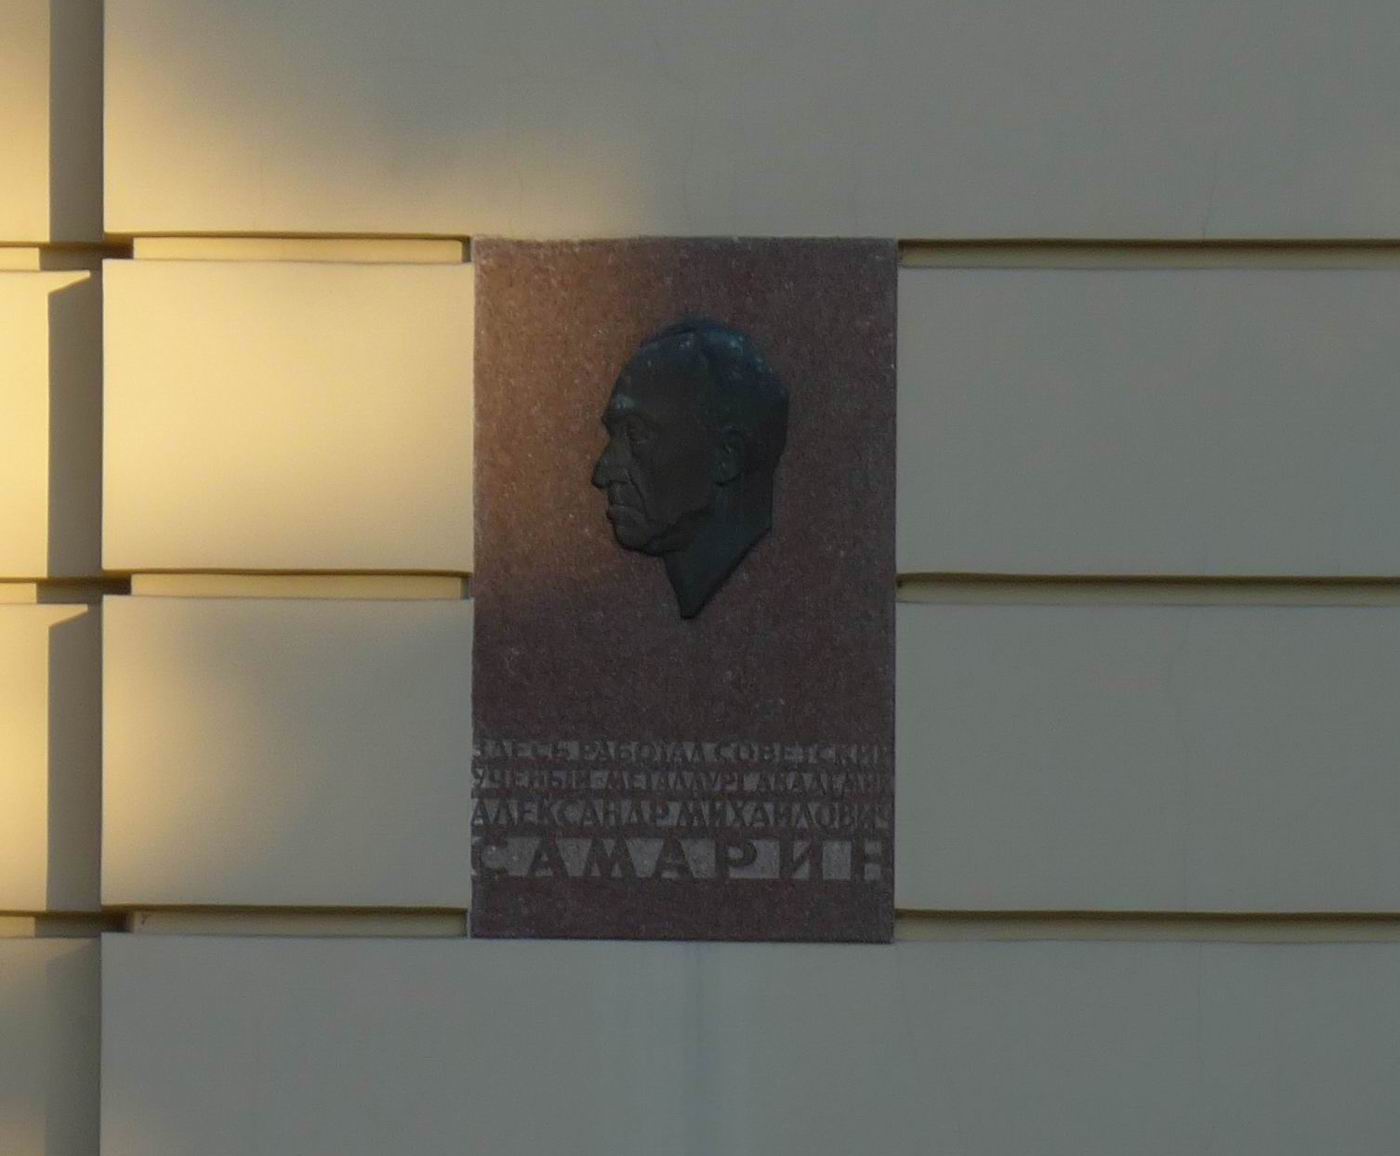 Мемориальная доска Самарину А.М. (1902–1970), ск. А.А.Комиссаров, арх. Н.А.Ковальчук, на Ленинском проспекте, дом 49, открыта 20.9.1972.